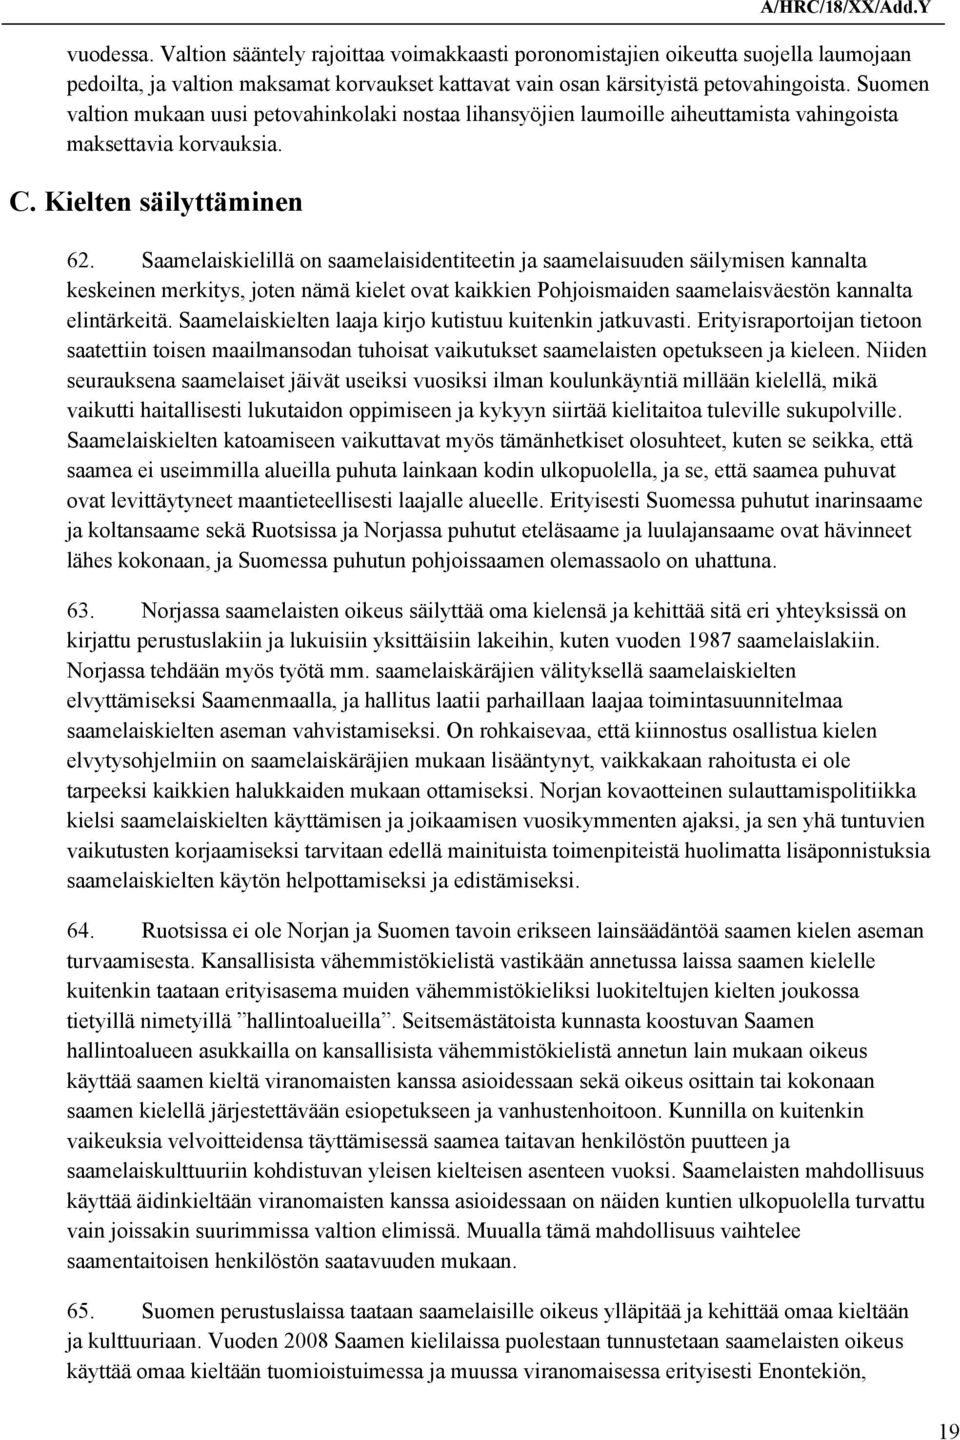 Saamelaiskielillä on saamelaisidentiteetin ja saamelaisuuden säilymisen kannalta keskeinen merkitys, joten nämä kielet ovat kaikkien Pohjoismaiden saamelaisväestön kannalta elintärkeitä.